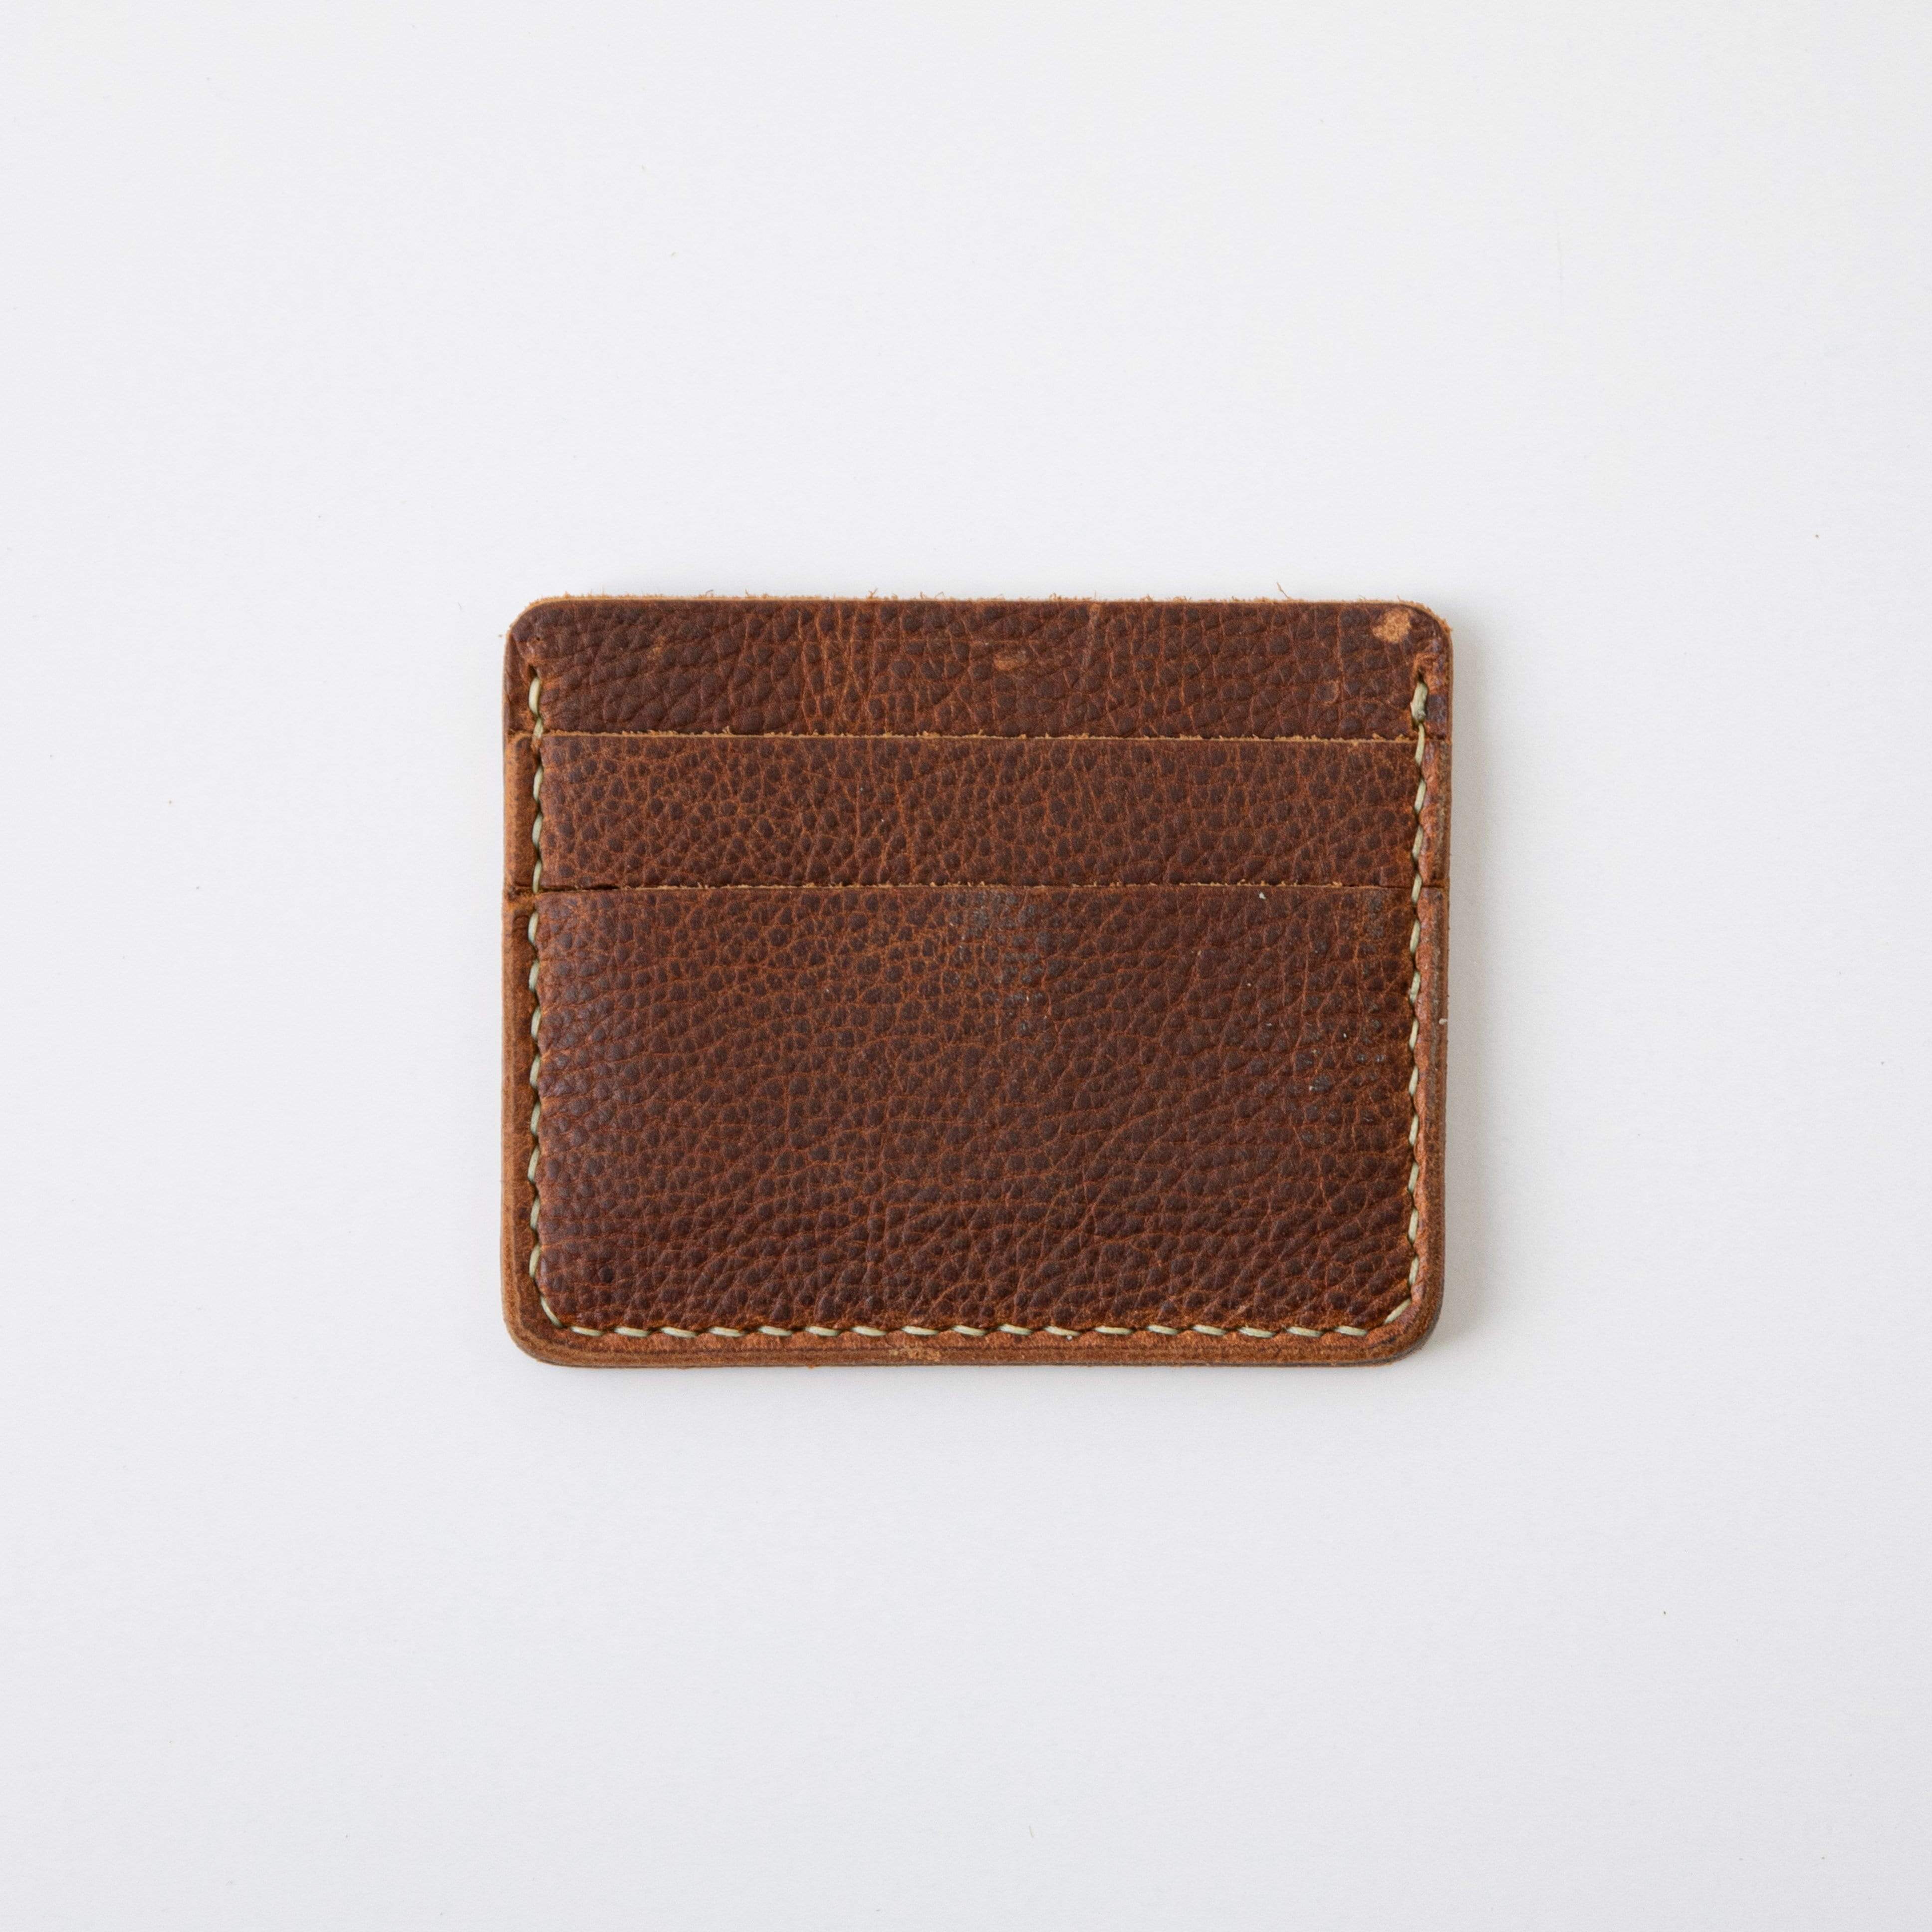 Fancy wallet for men, pure leather wallet for men, rfid protected wallet,  violet for men, ladies